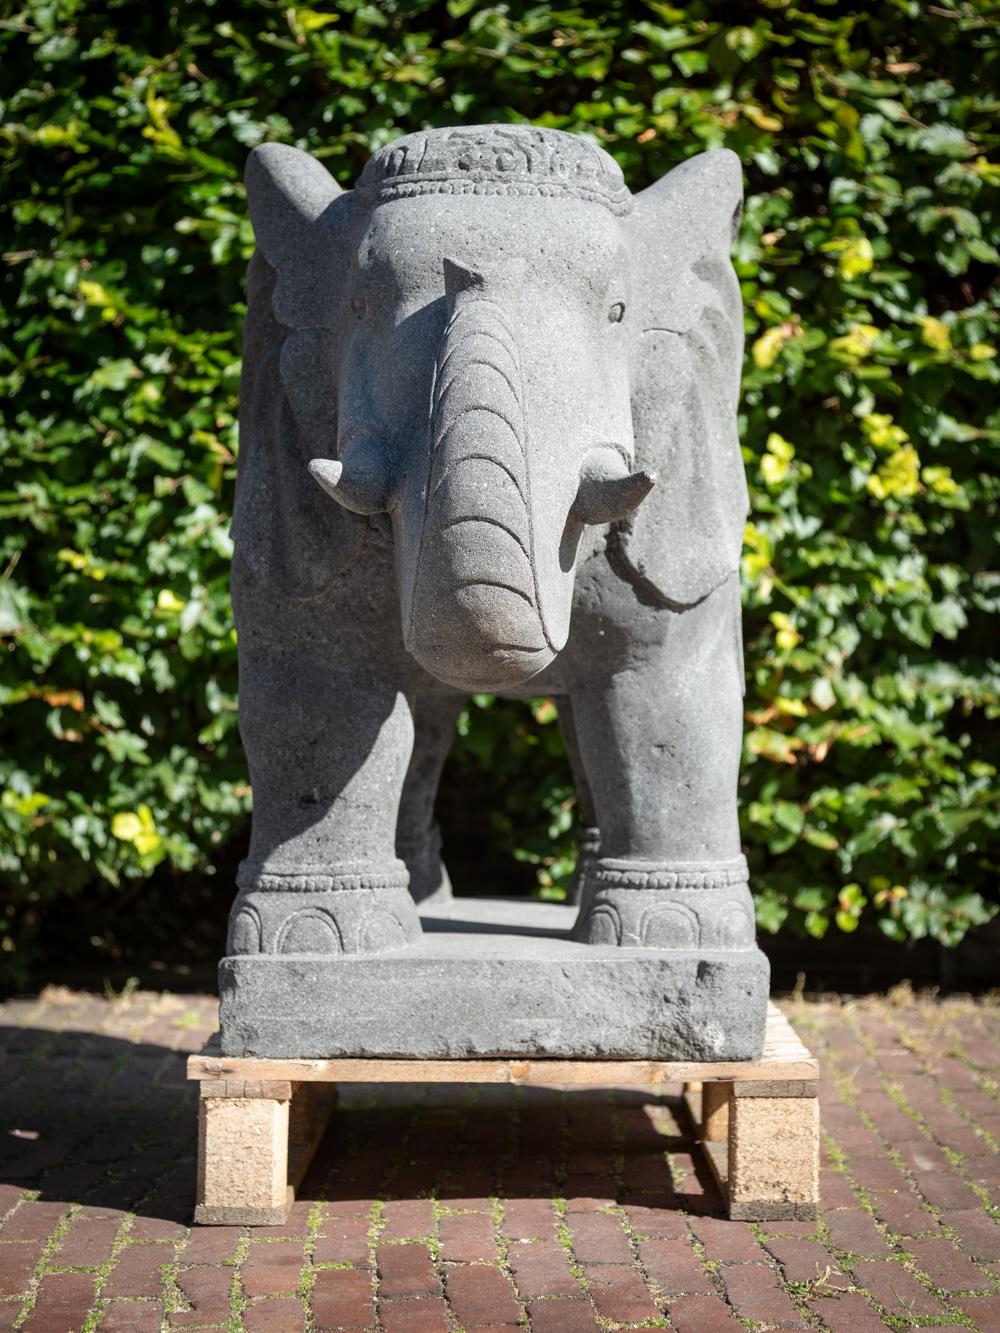 Le grand éléphant en lavastone d'Indonésie est un objet remarquable et artistiquement significatif provenant de ce pays. Réalisée en lavastone, cette sculpture d'éléphant mesure 80 cm de haut, 47 cm de large et 119 cm de profondeur. Nouvellement